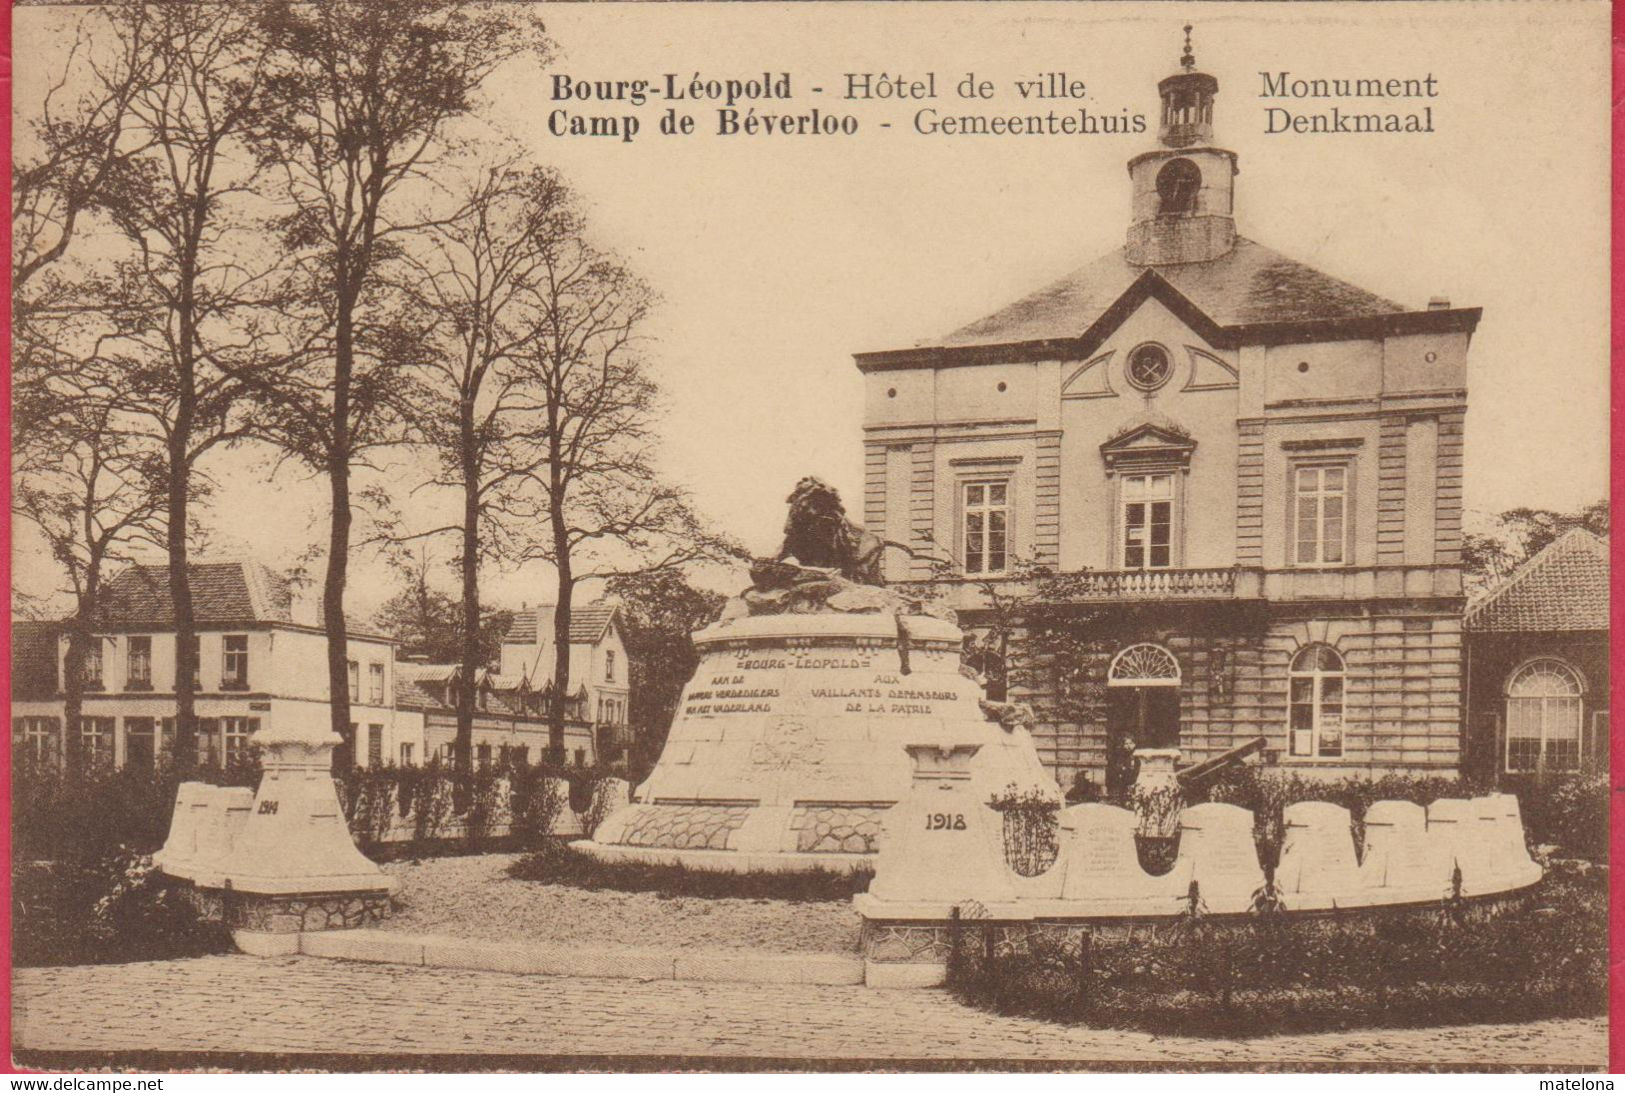 BELGIQUE LIMBOURG BOURG-LEOPOLD CAMP DE BEVERLOO HOTEL DE VILLE MONUMENT - Leopoldsburg (Camp De Beverloo)